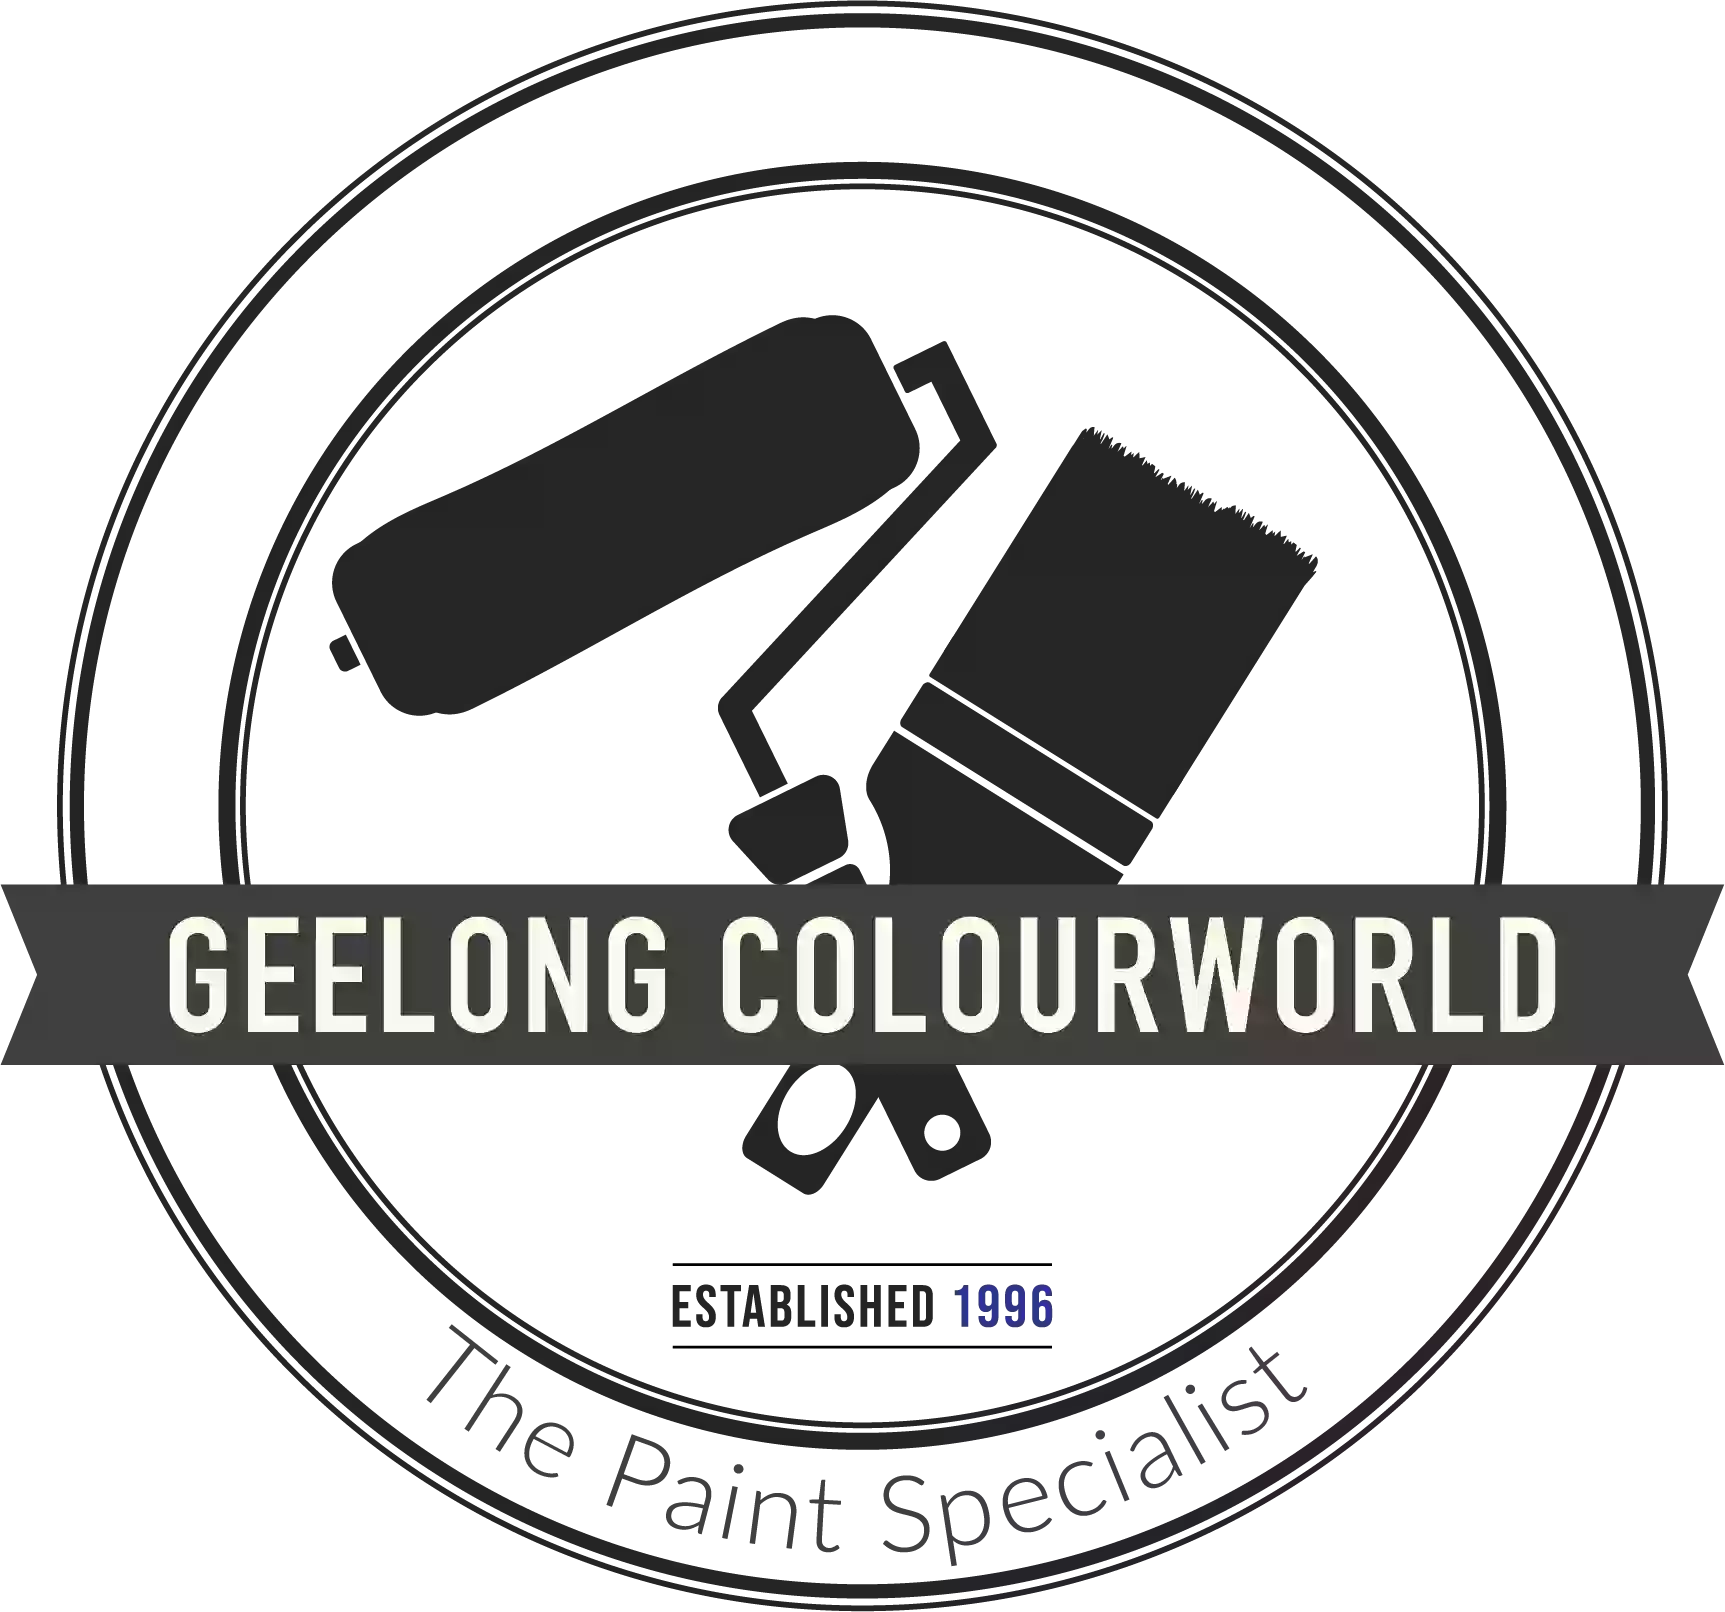 Geelong Colourworld